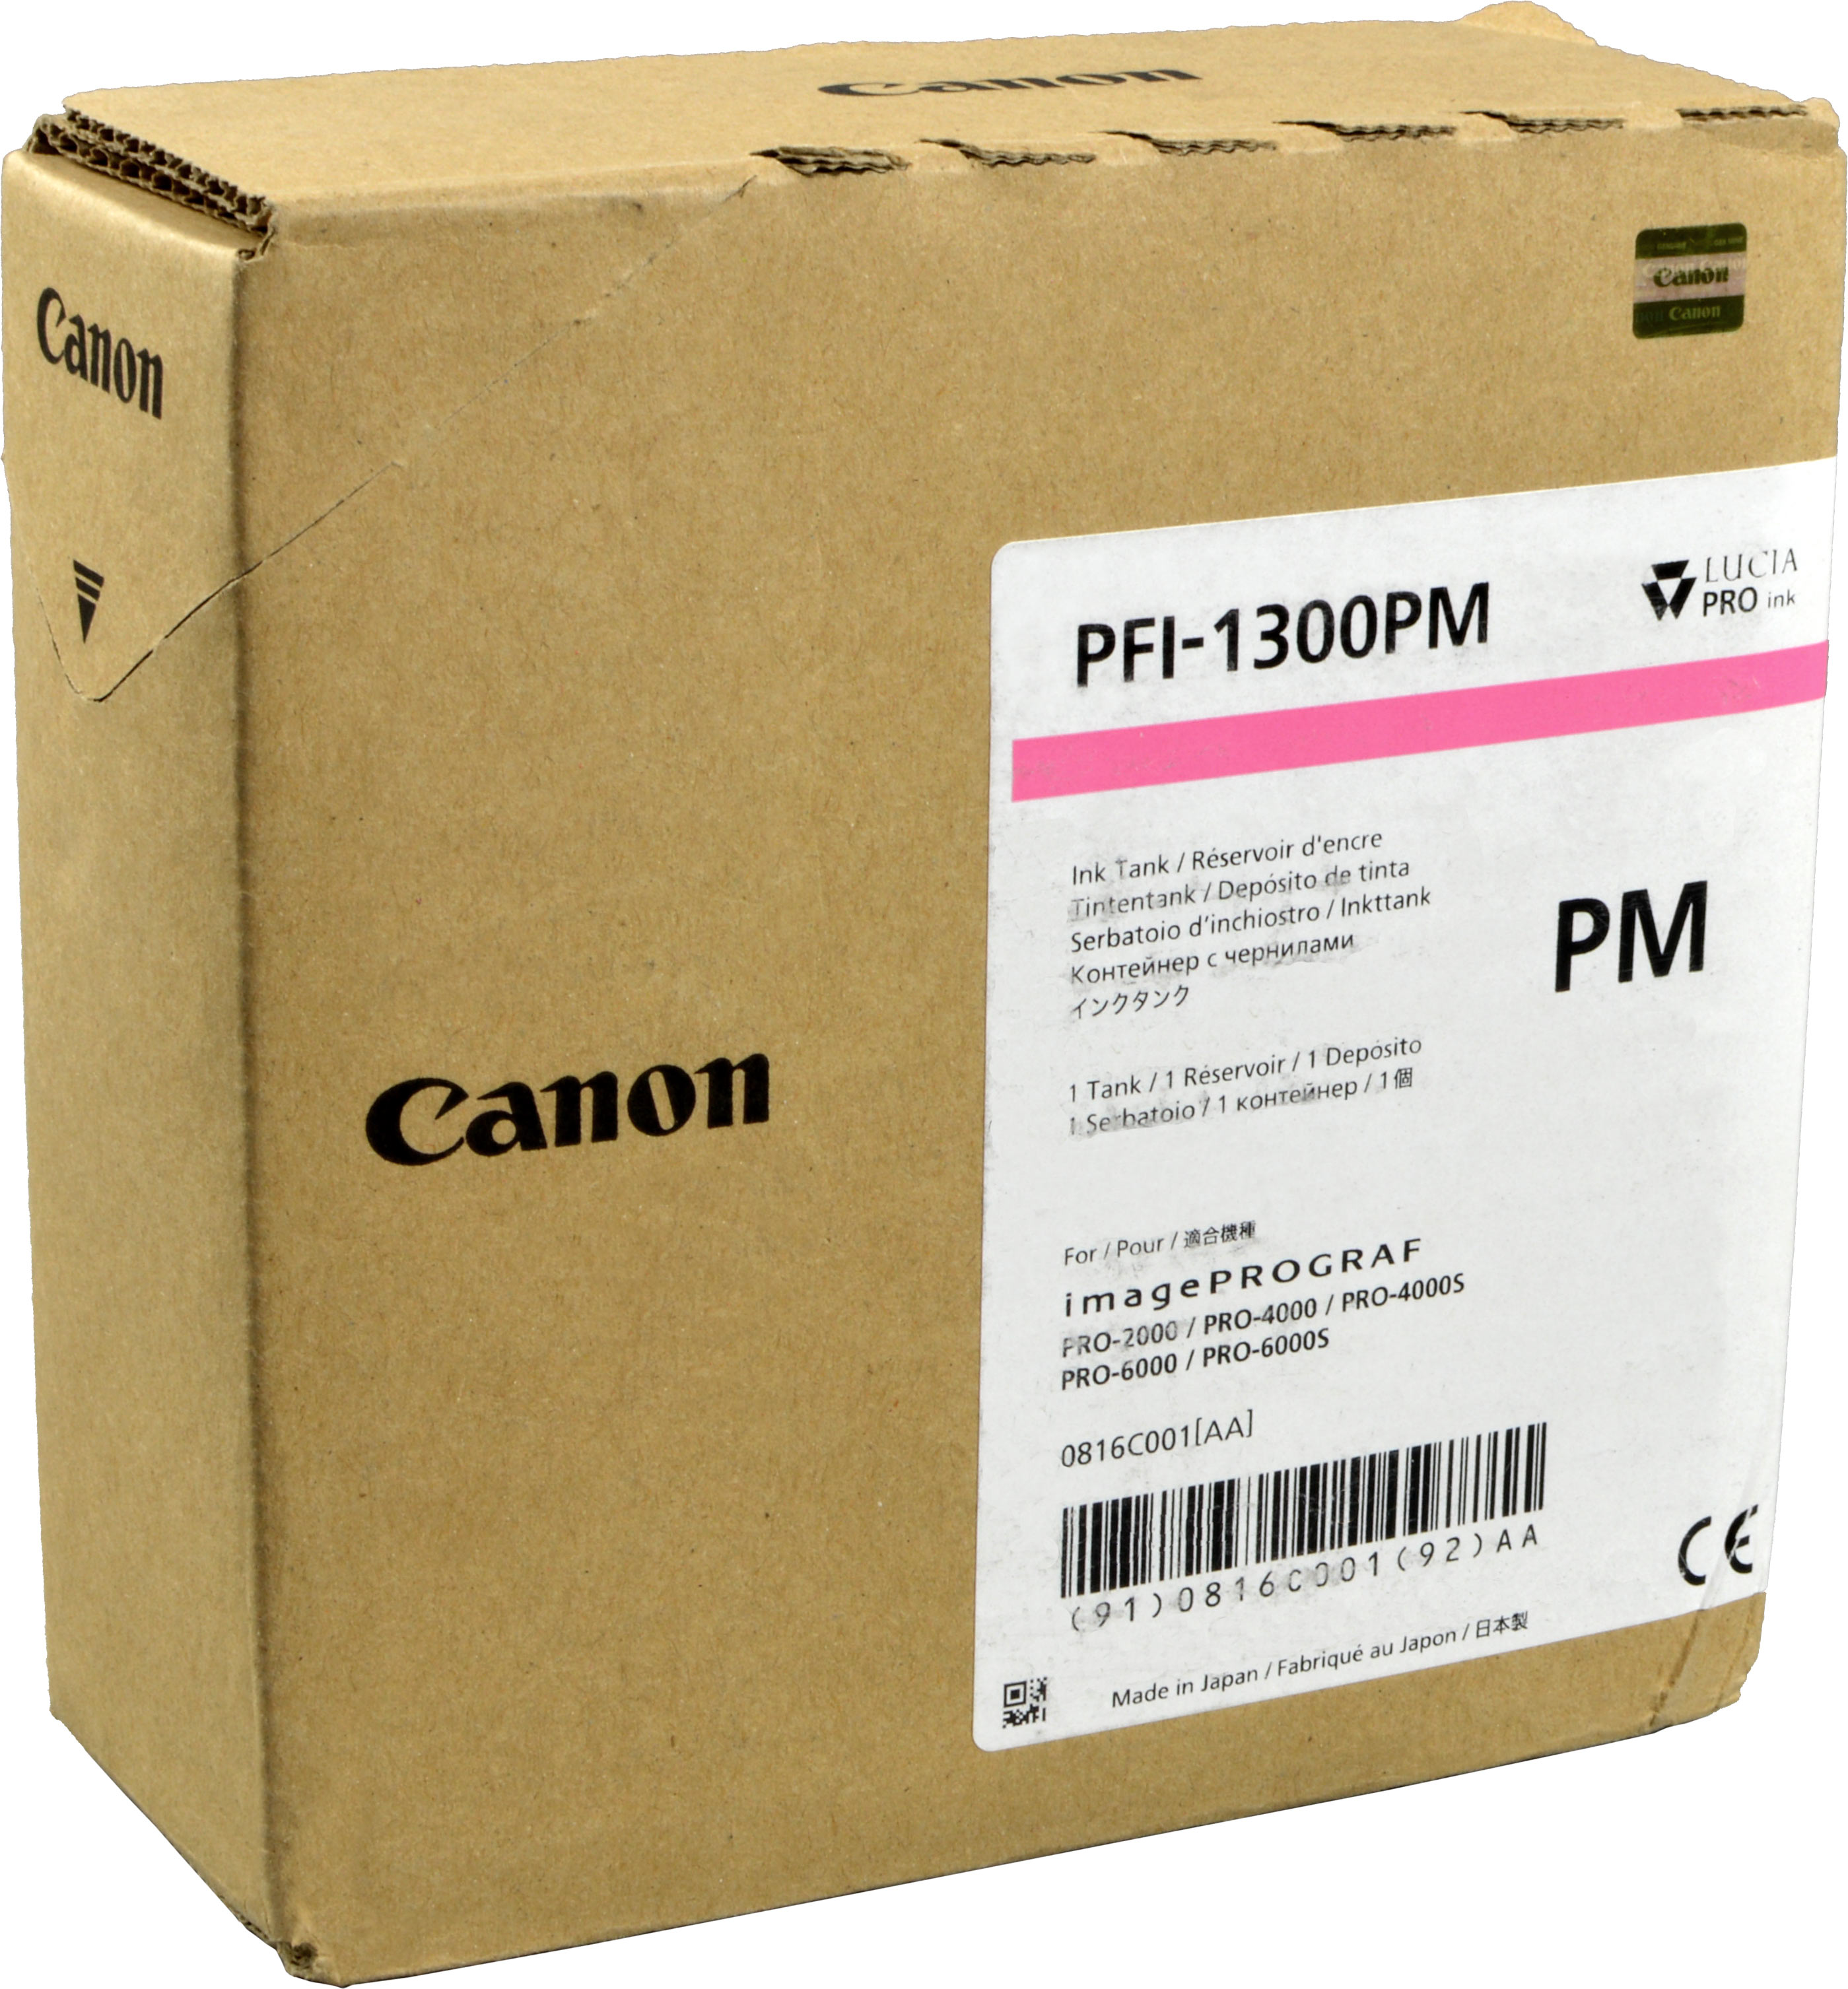 Canon Tinte 0816C001  PFI-1300PM  photo magenta